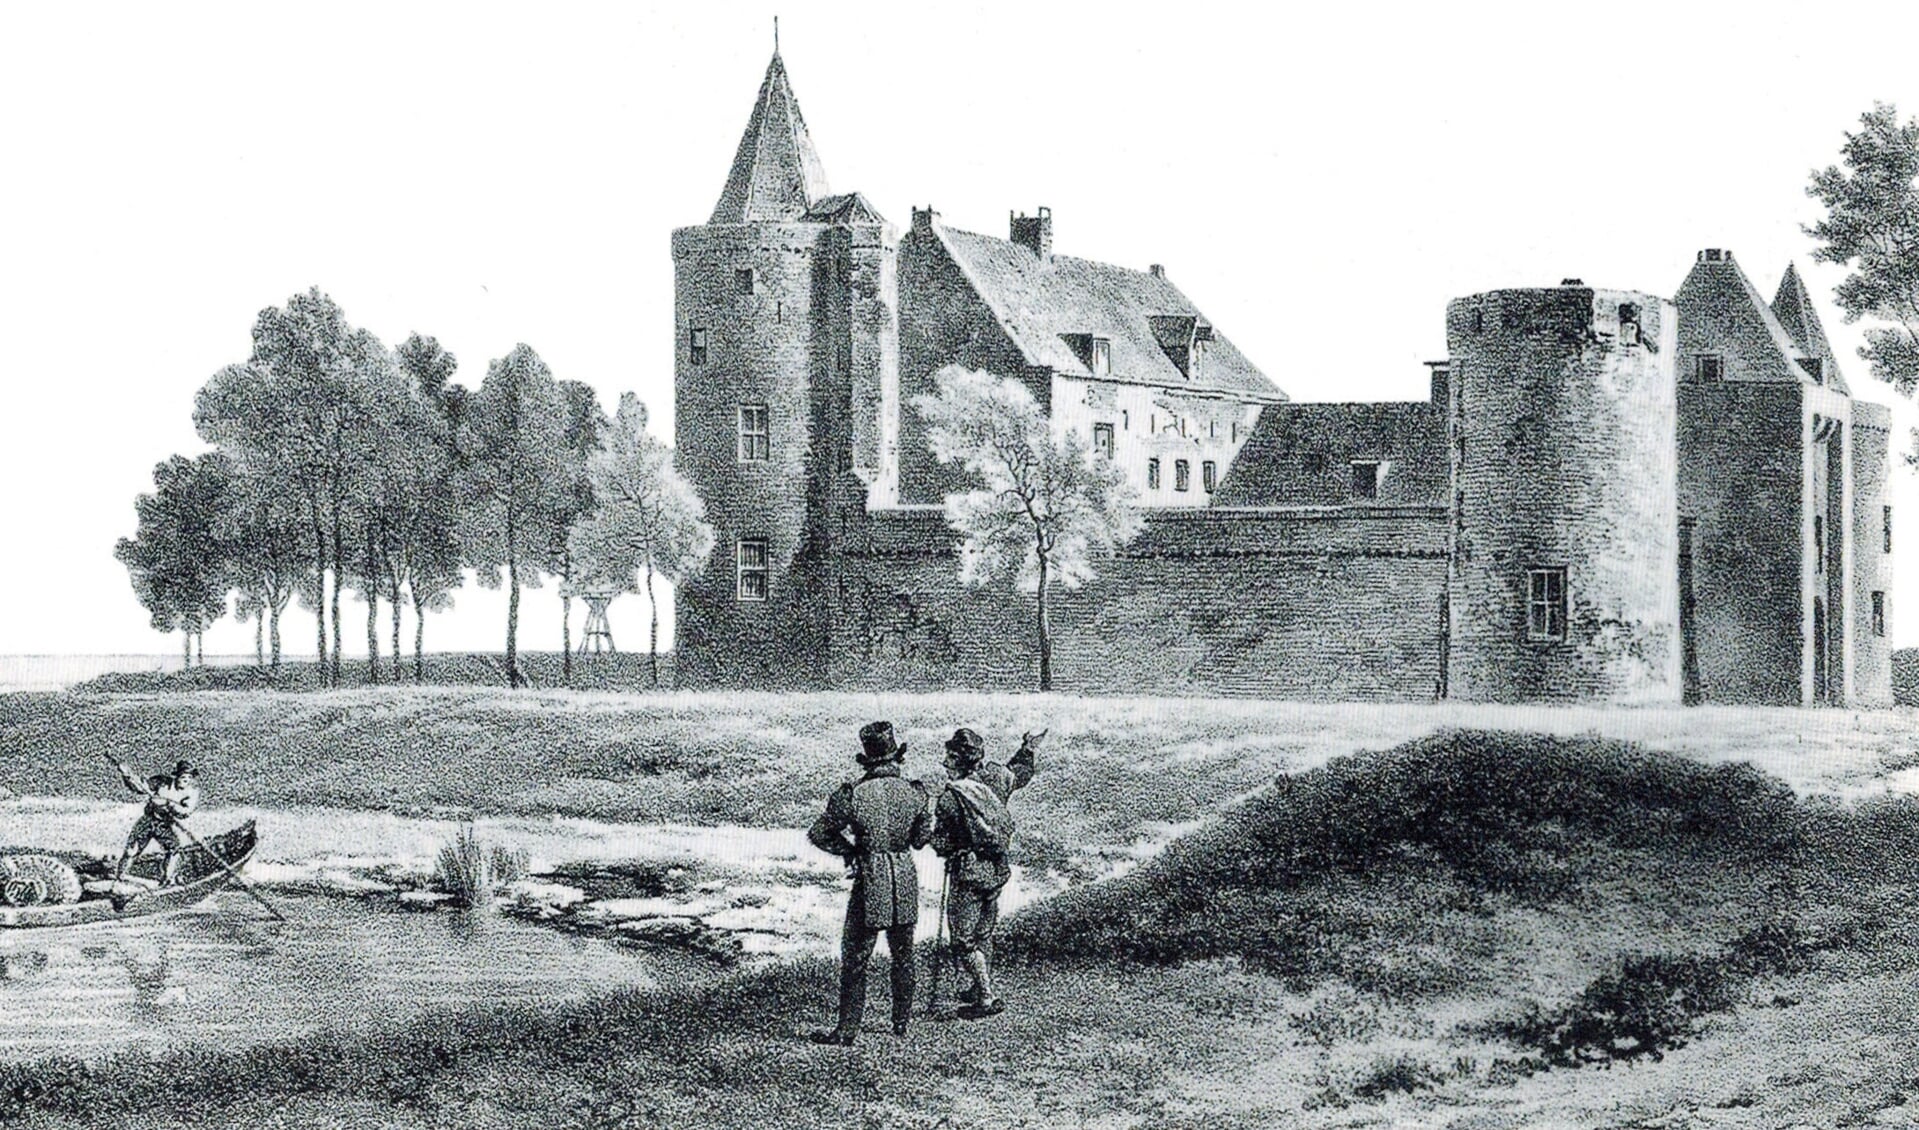 Gesigt op ’t Slot te Muiden: Steendruk door Barend Cornelis Koekoek - 1850.